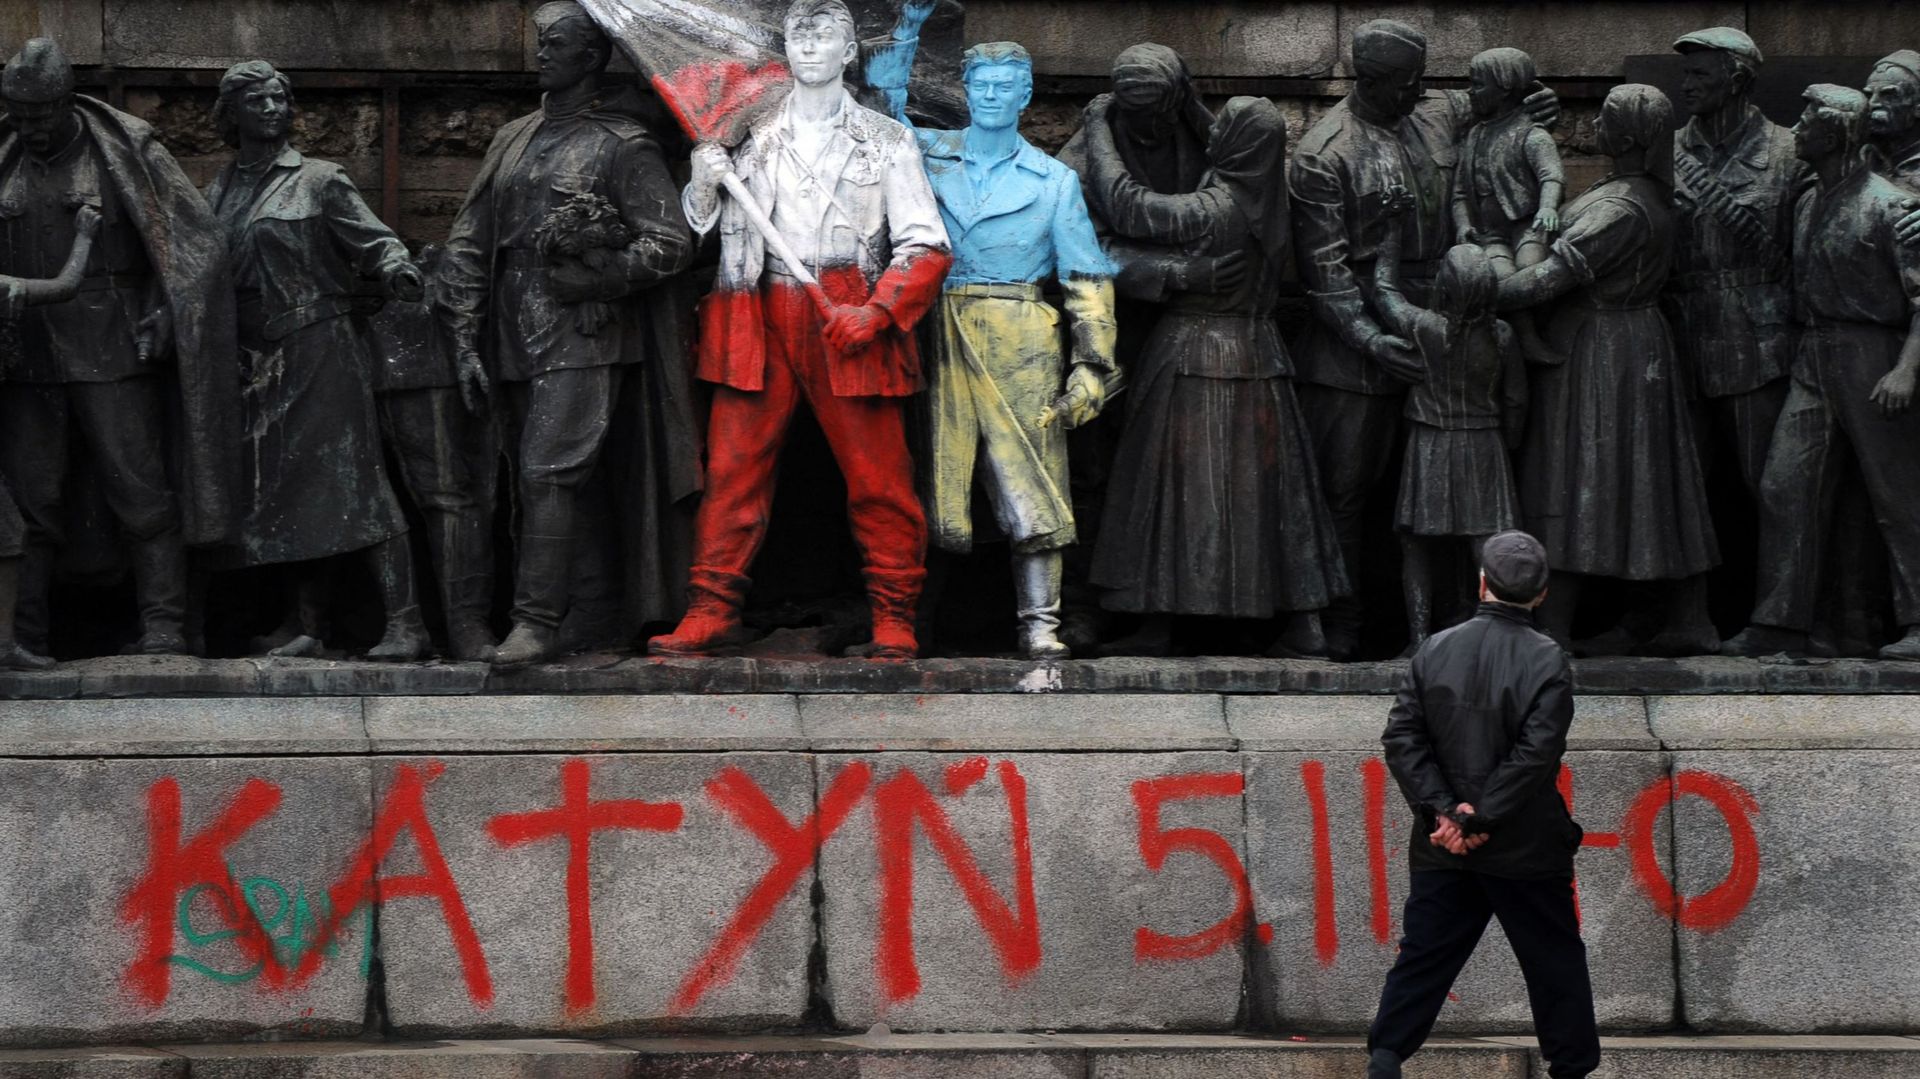 Un homme regarde les figures de soldats communistes, peintes aux couleurs des drapeaux ukrainien et polonais par un artiste inconnu et avec des panneaux "Katyn 5.03.1940" dans le centre de Sofia, le 5 mars 2014.